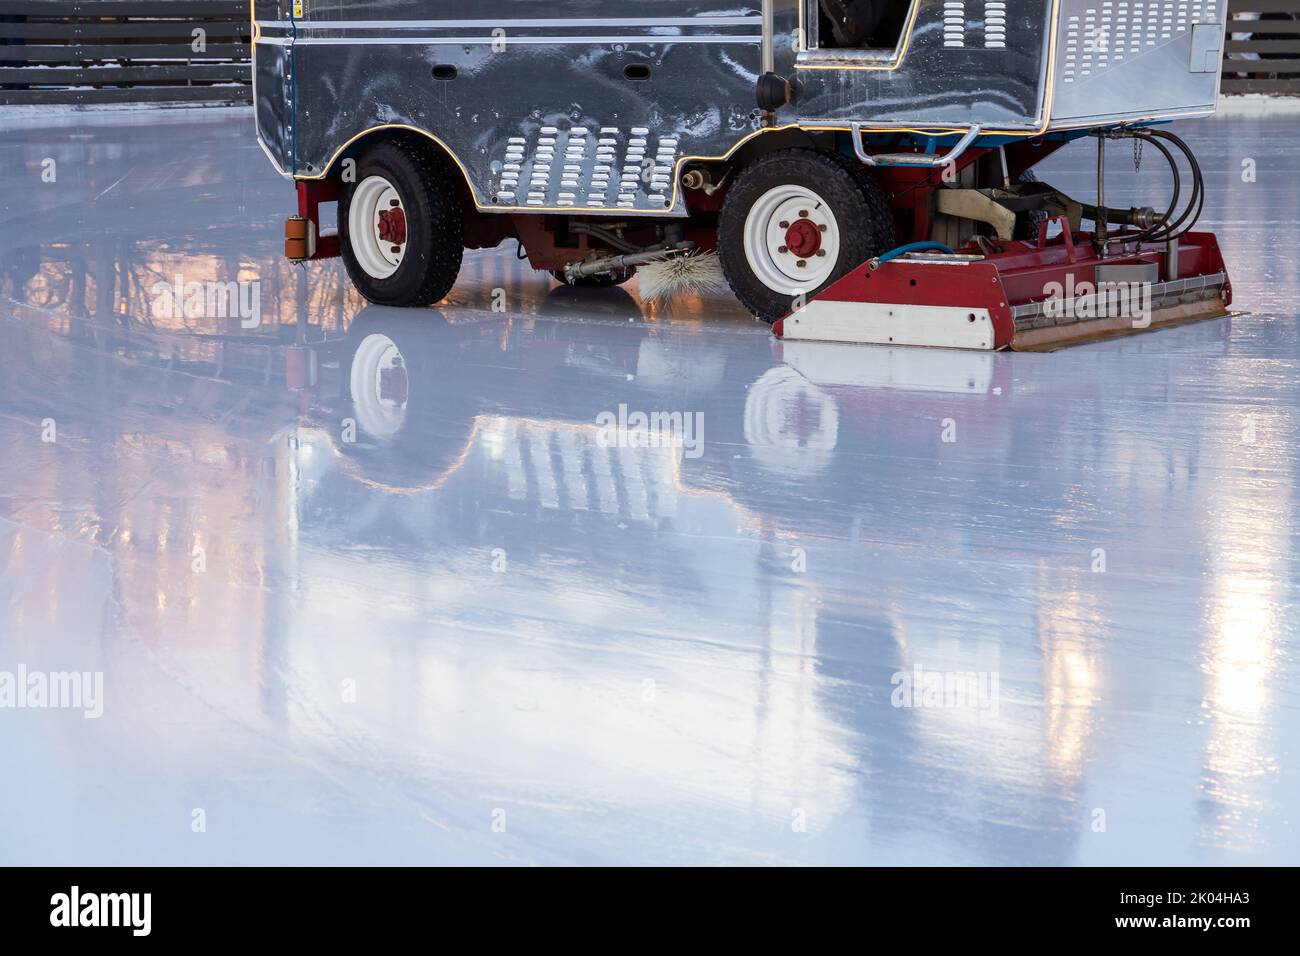 Eisbahn-Service ist im Gange, Maschinen für die Eisrenovierung arbeiten auf einer leeren Arena Stockfoto